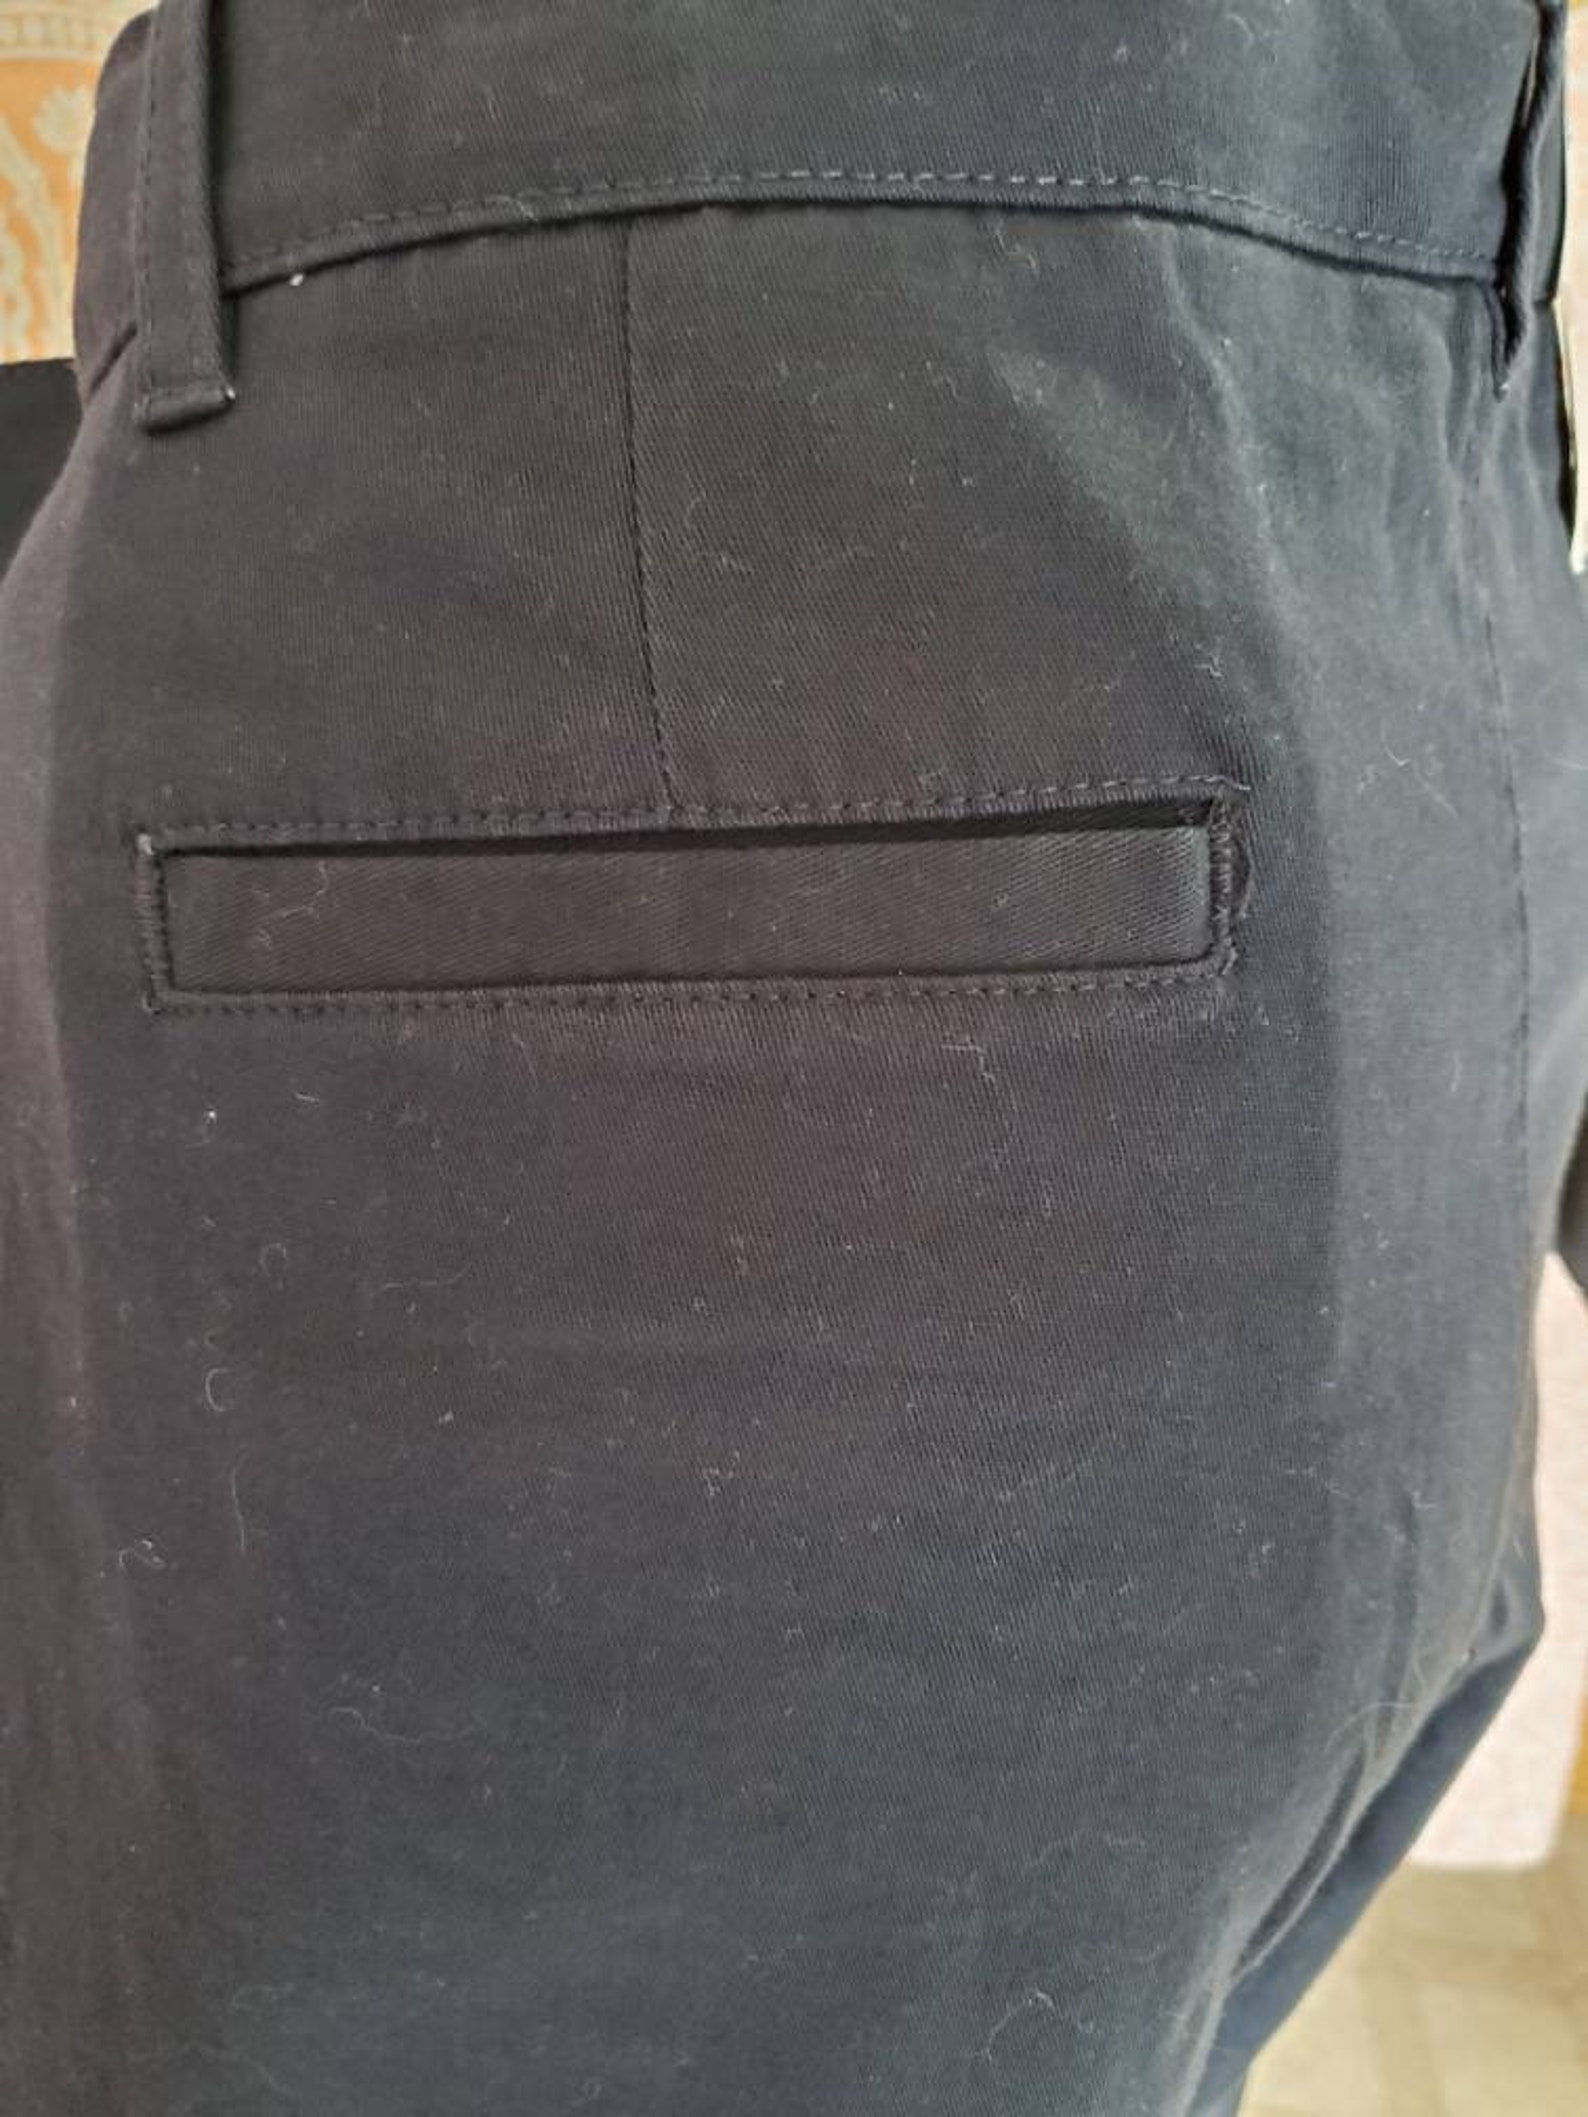 IZOD Husky size 20 flat front pant in navy blue | Etsy